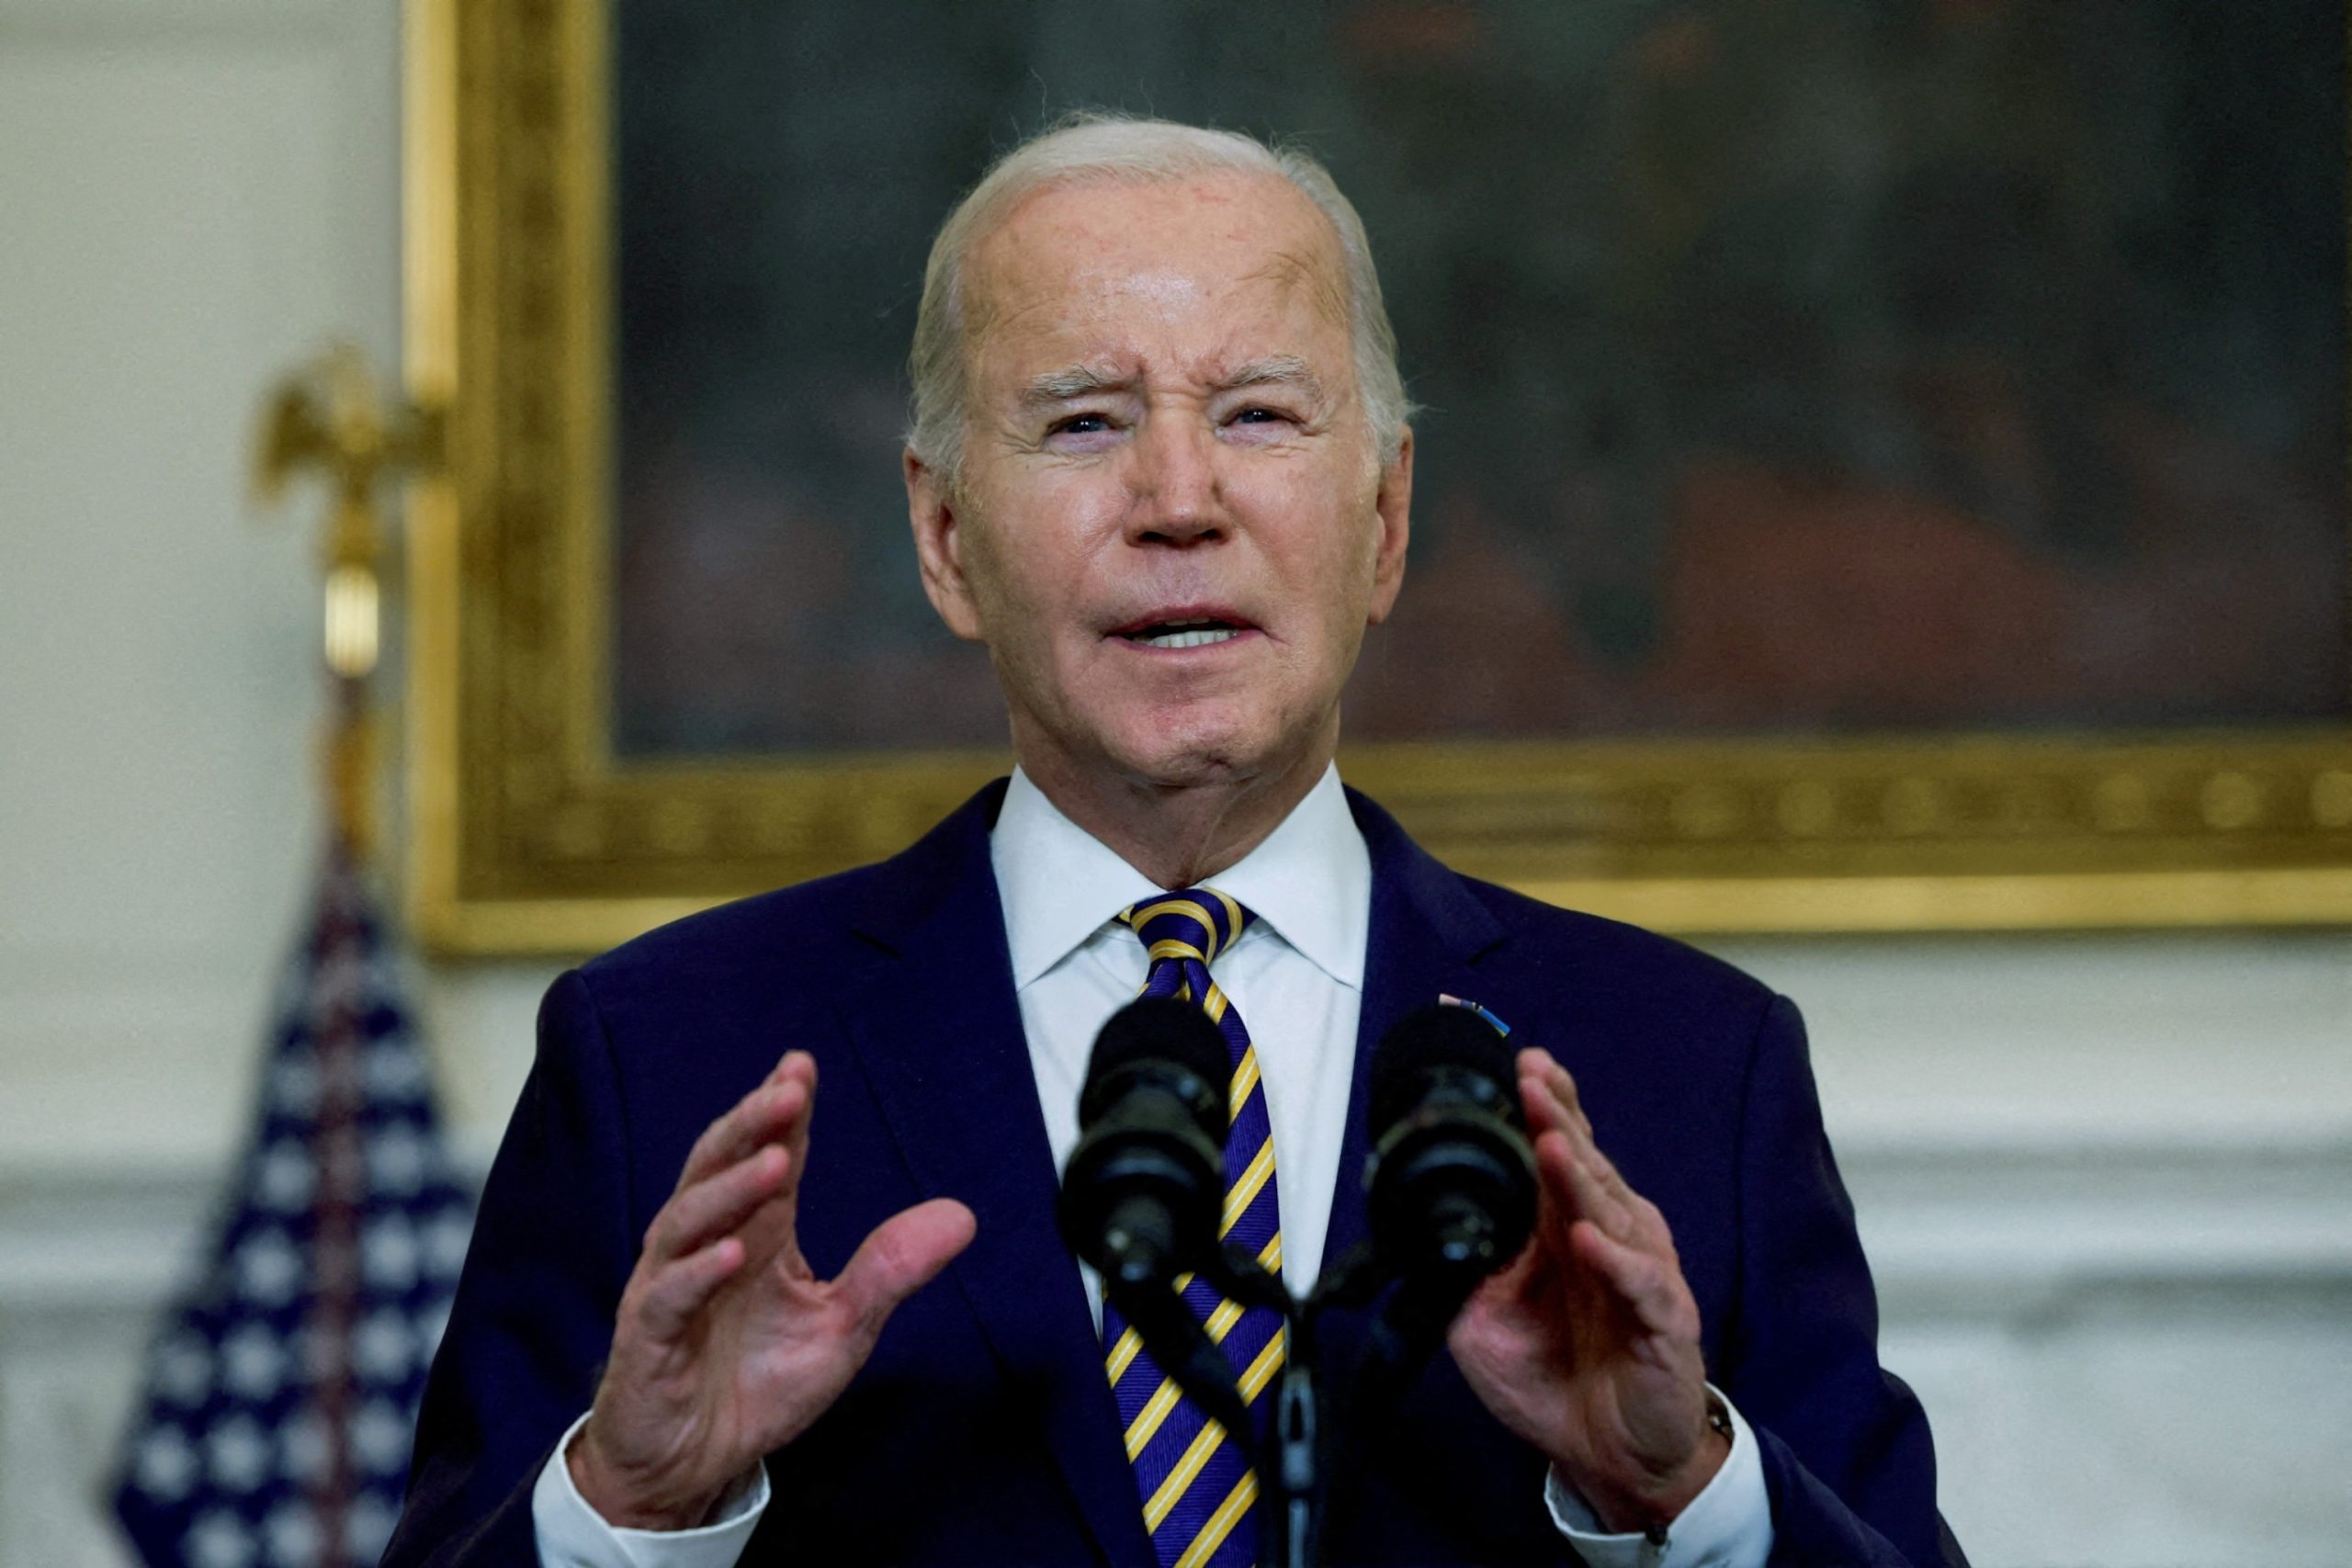 Biden Criticizes Trump's NATO Comments as 'Shocking' and 'Un-American'